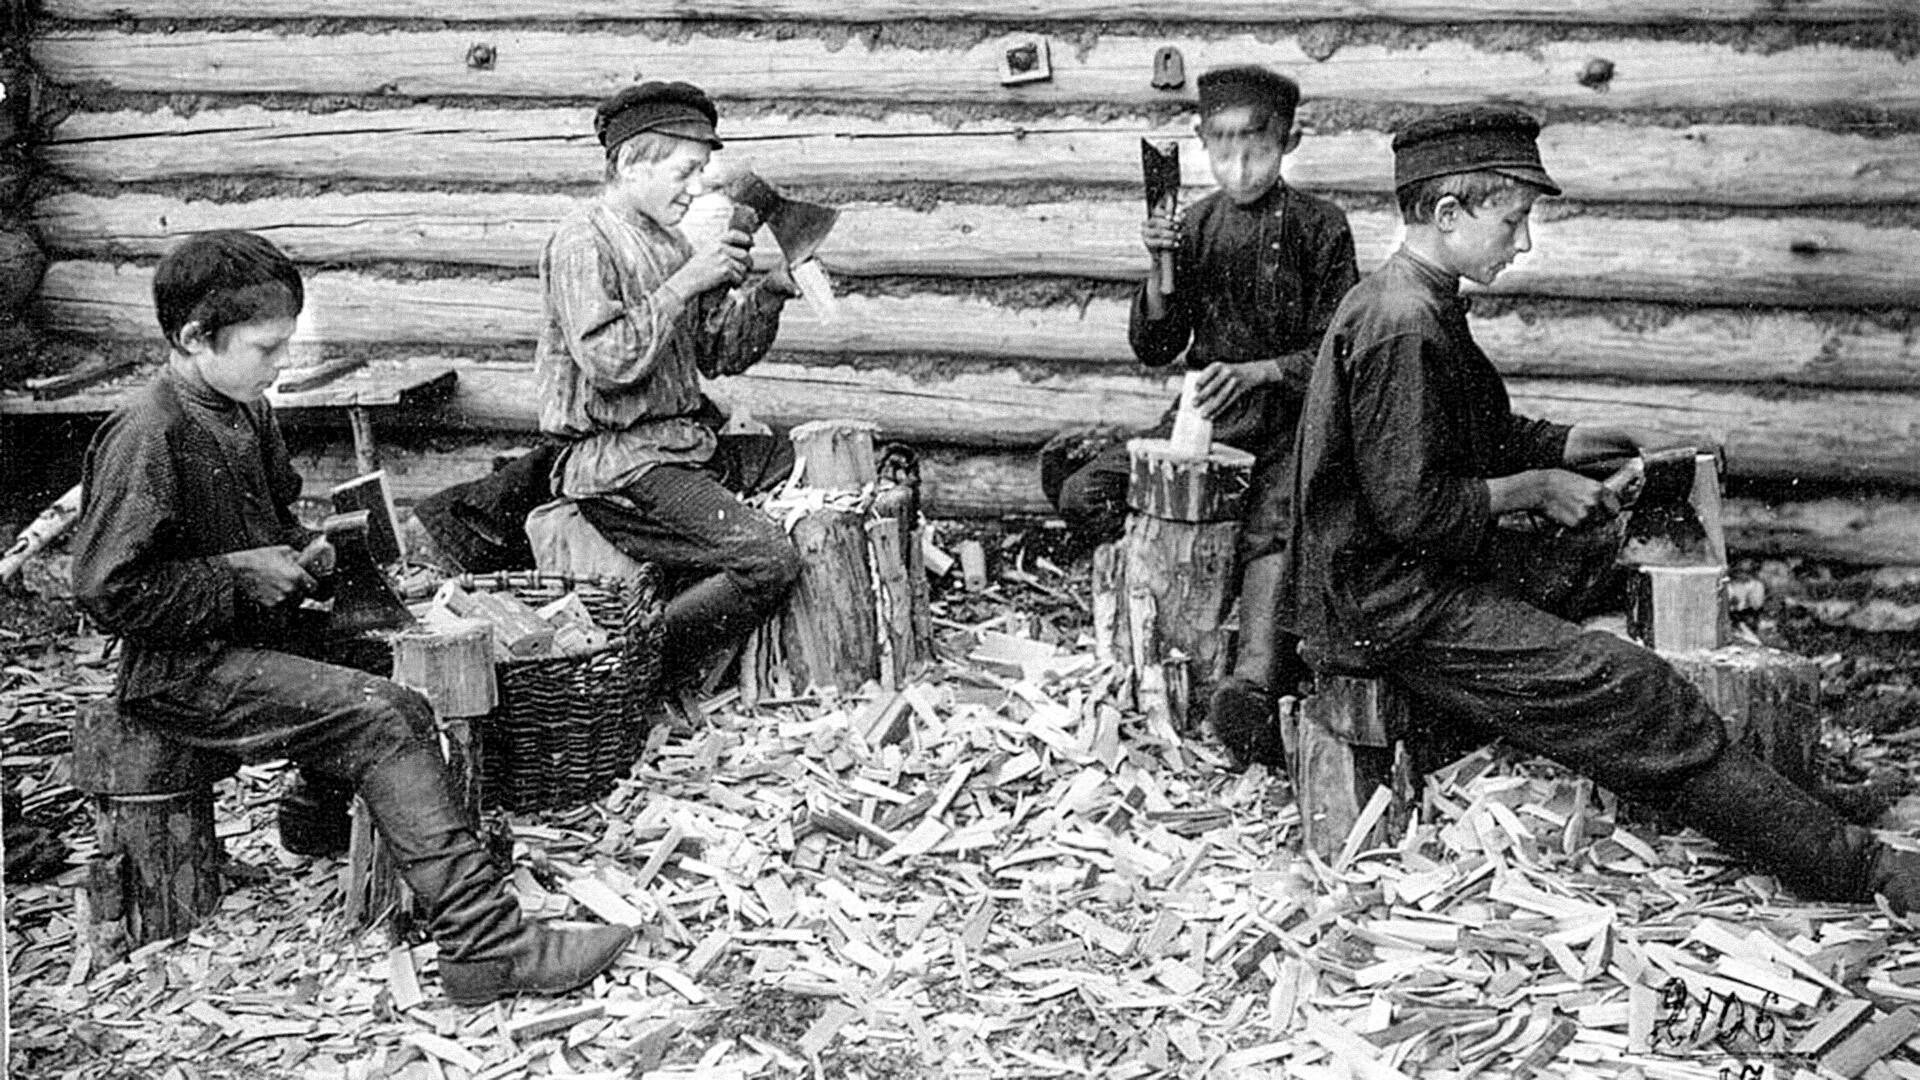 Proizvodnja kalupa za šešire. Rusi, Rjazanjska oblast, Kasimovski rajon, početak 20. stoljeća. 